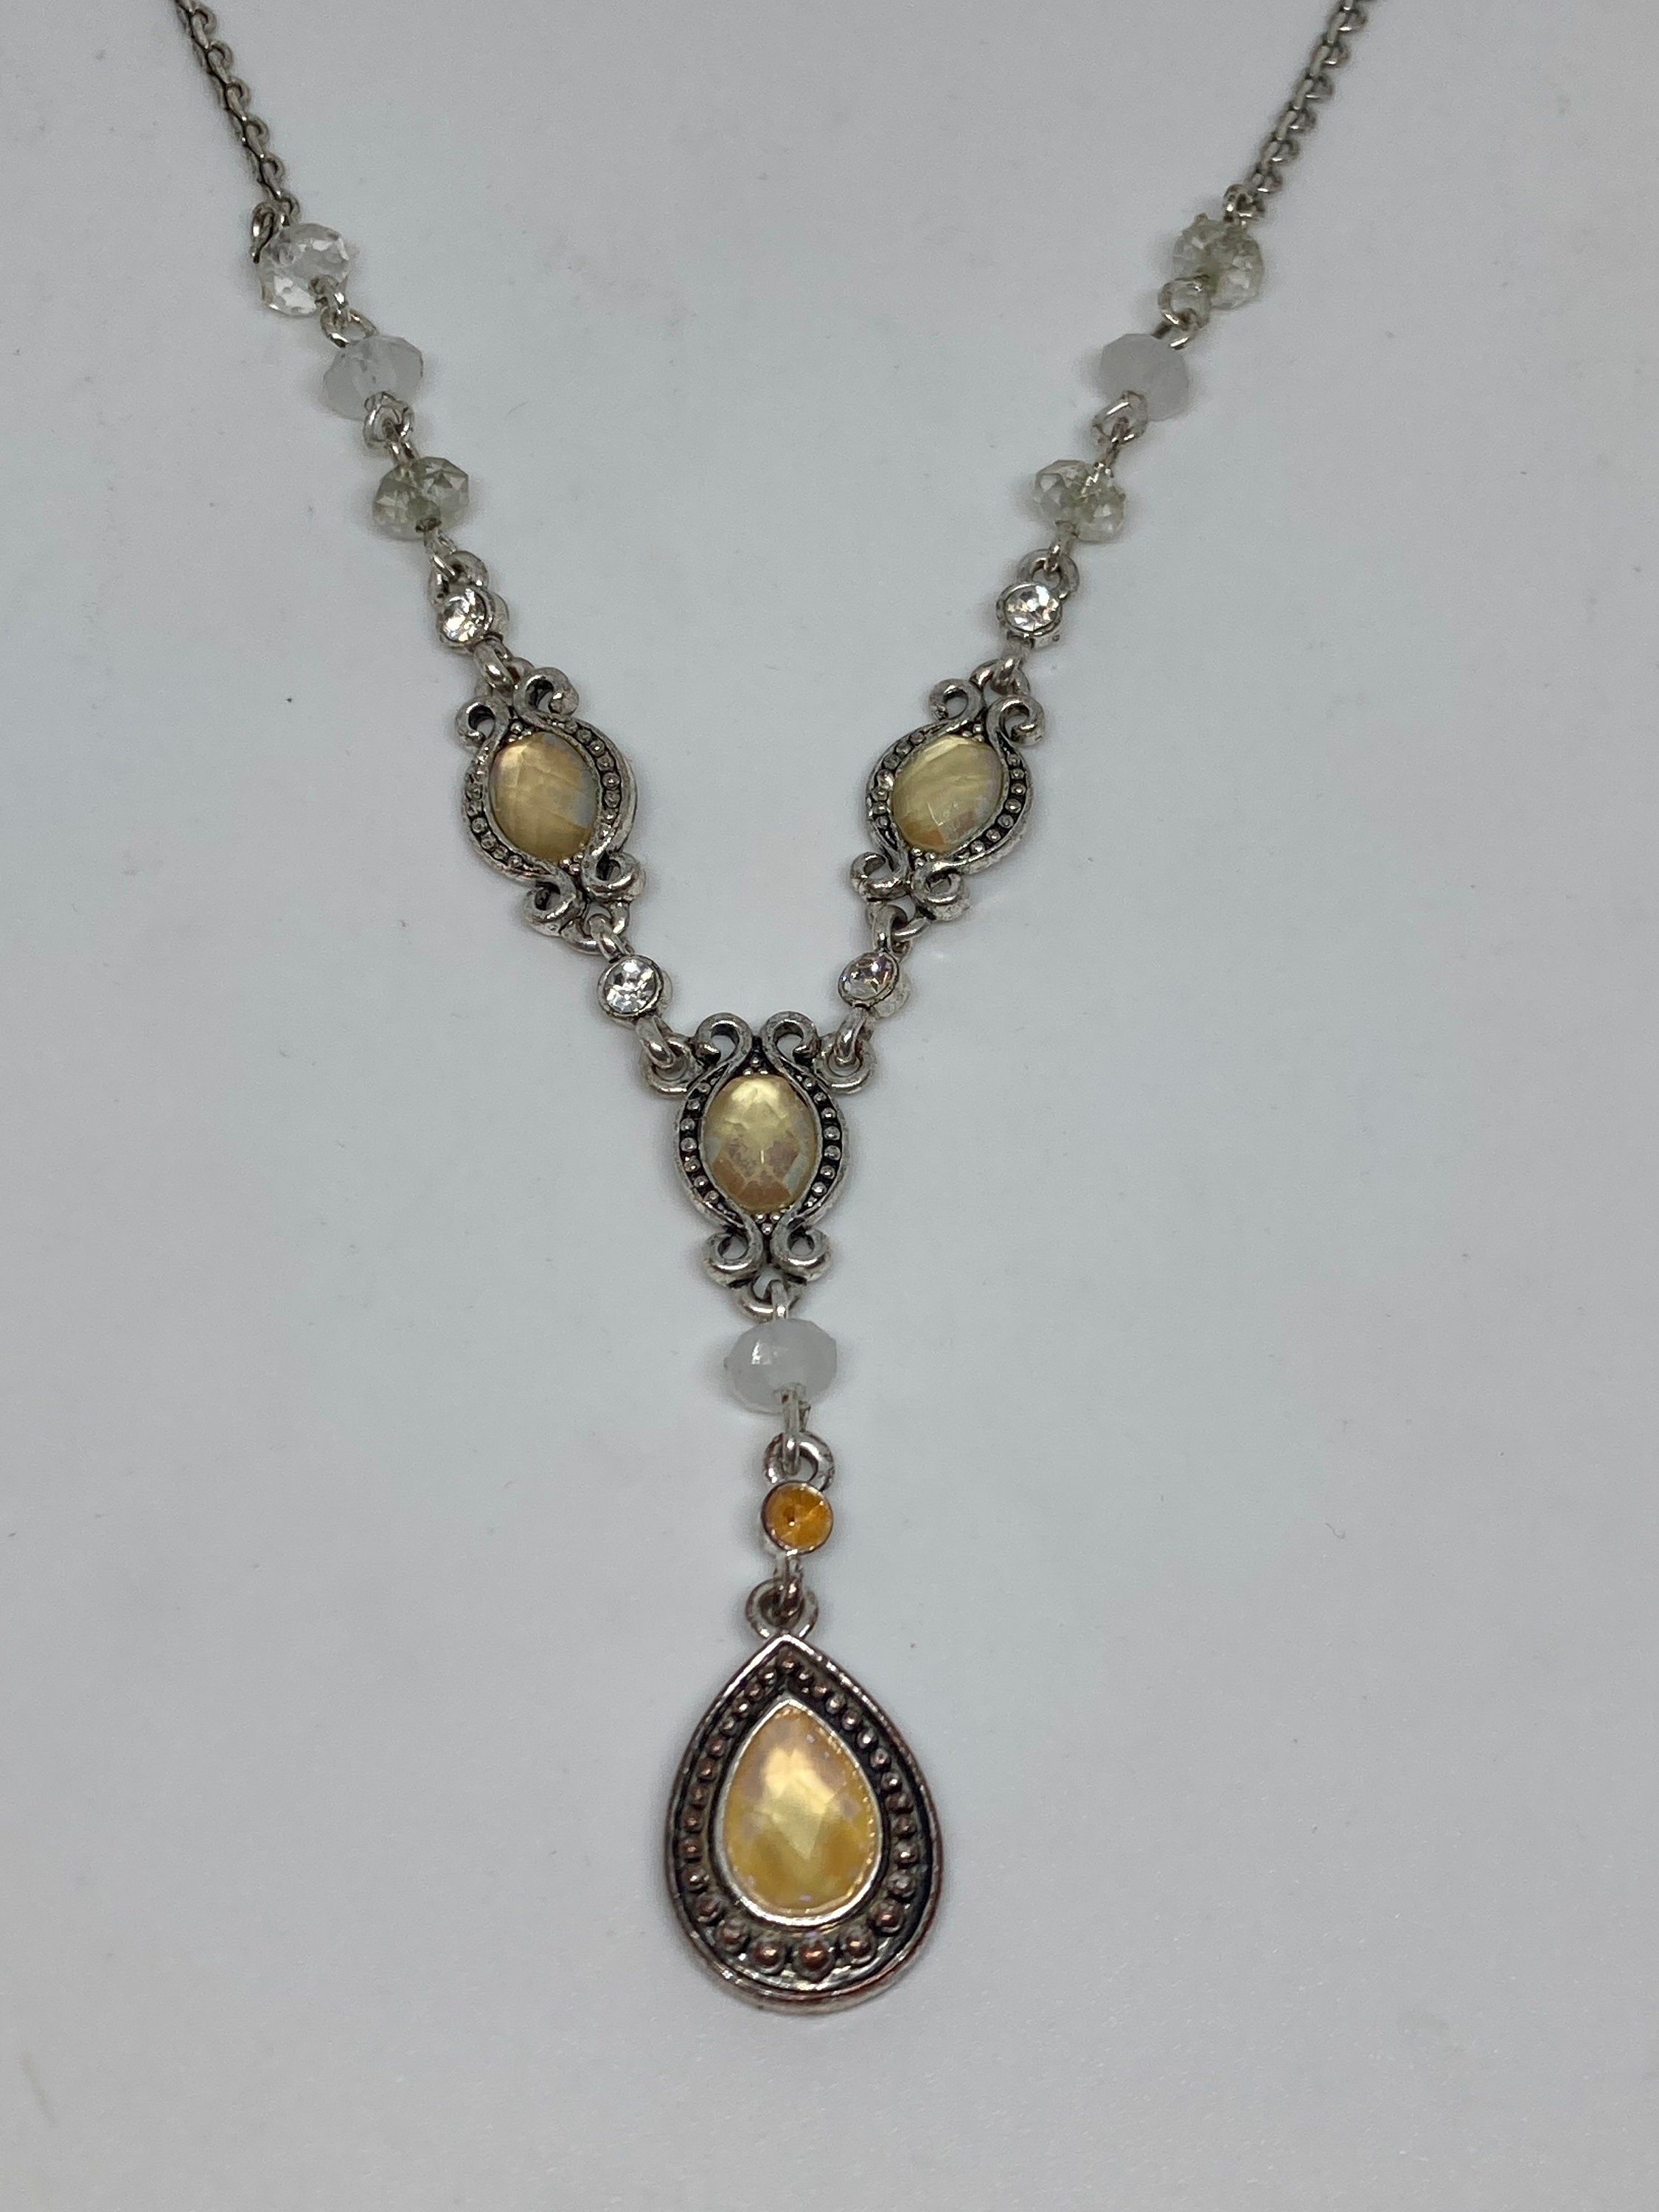 Giani Bernini Jewelry - Bracelets - Keizer, Oregon